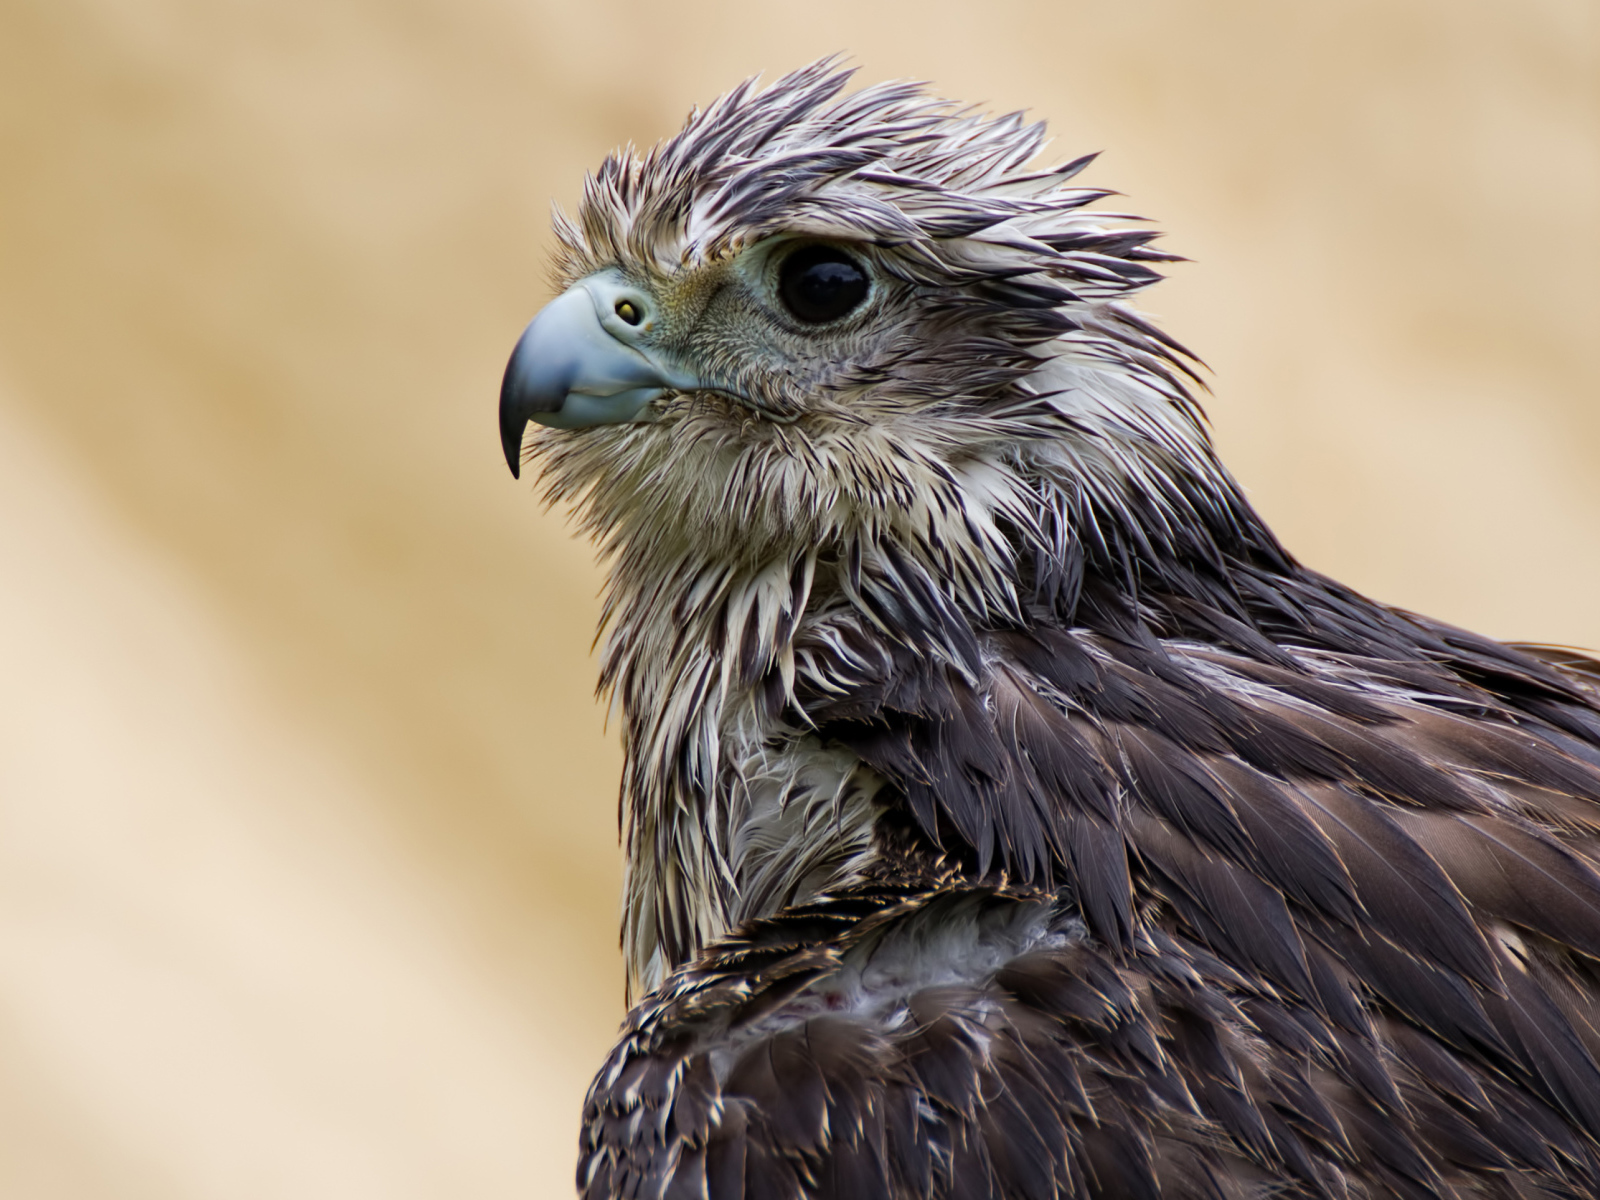 Wet Hawk with a sharp beak